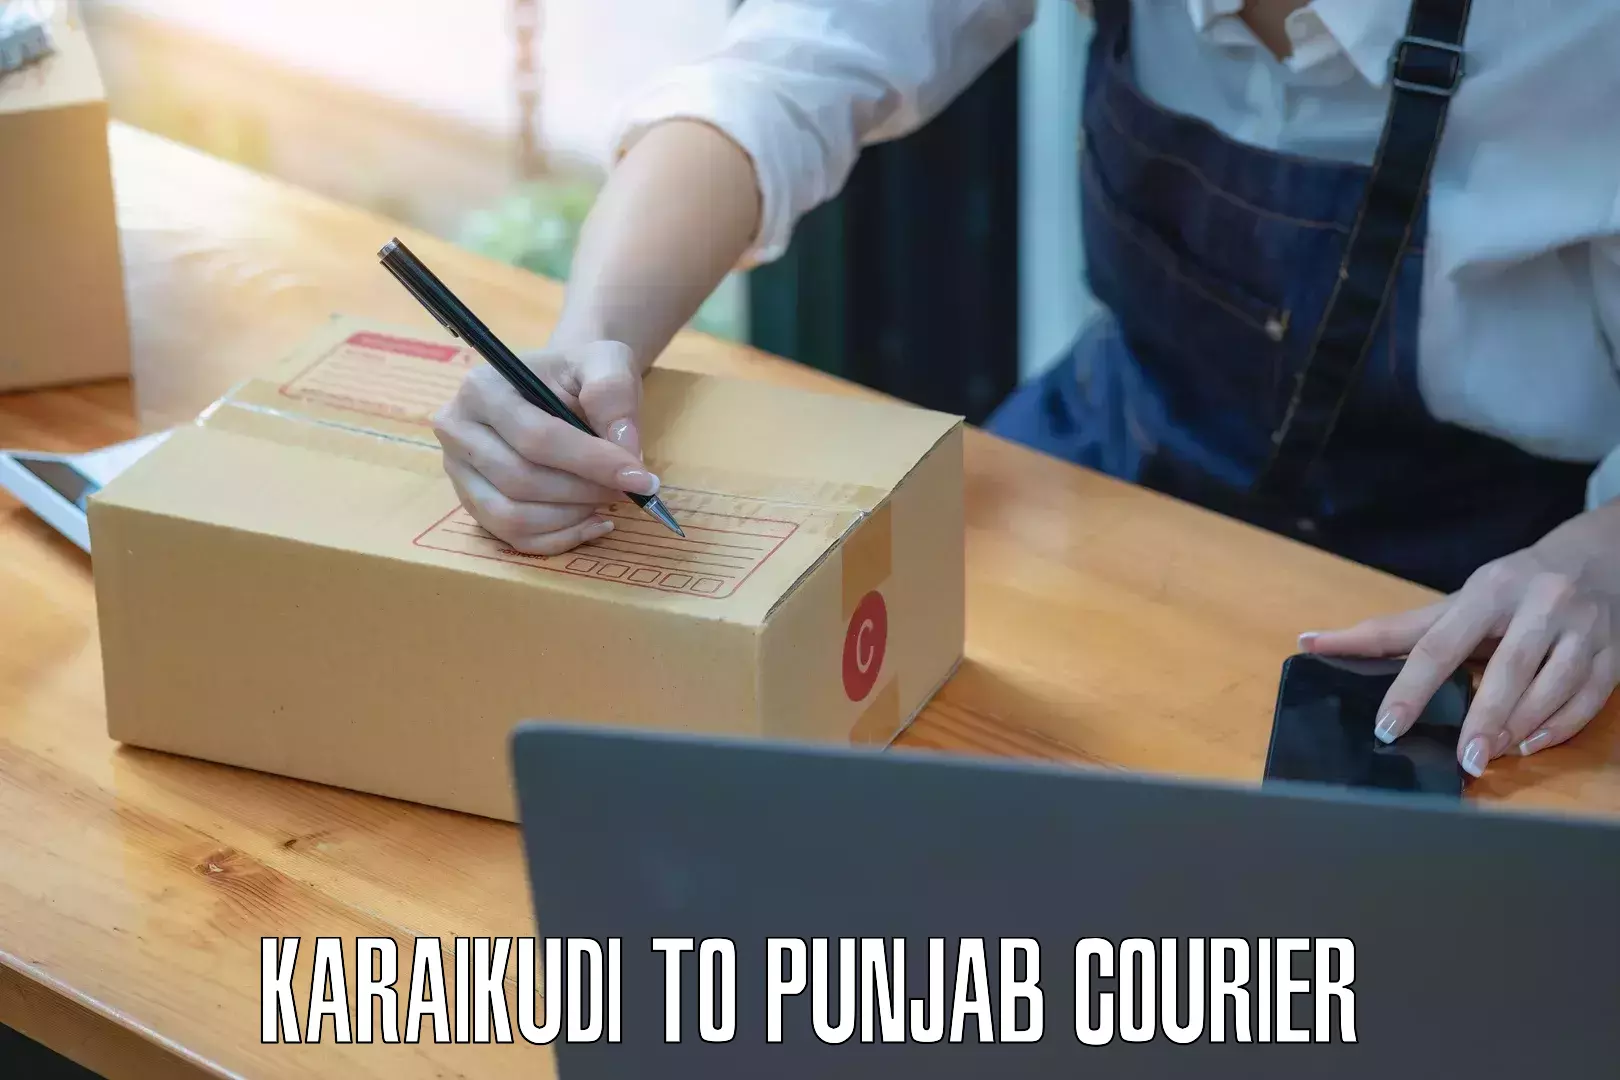 Advanced shipping technology Karaikudi to Punjab